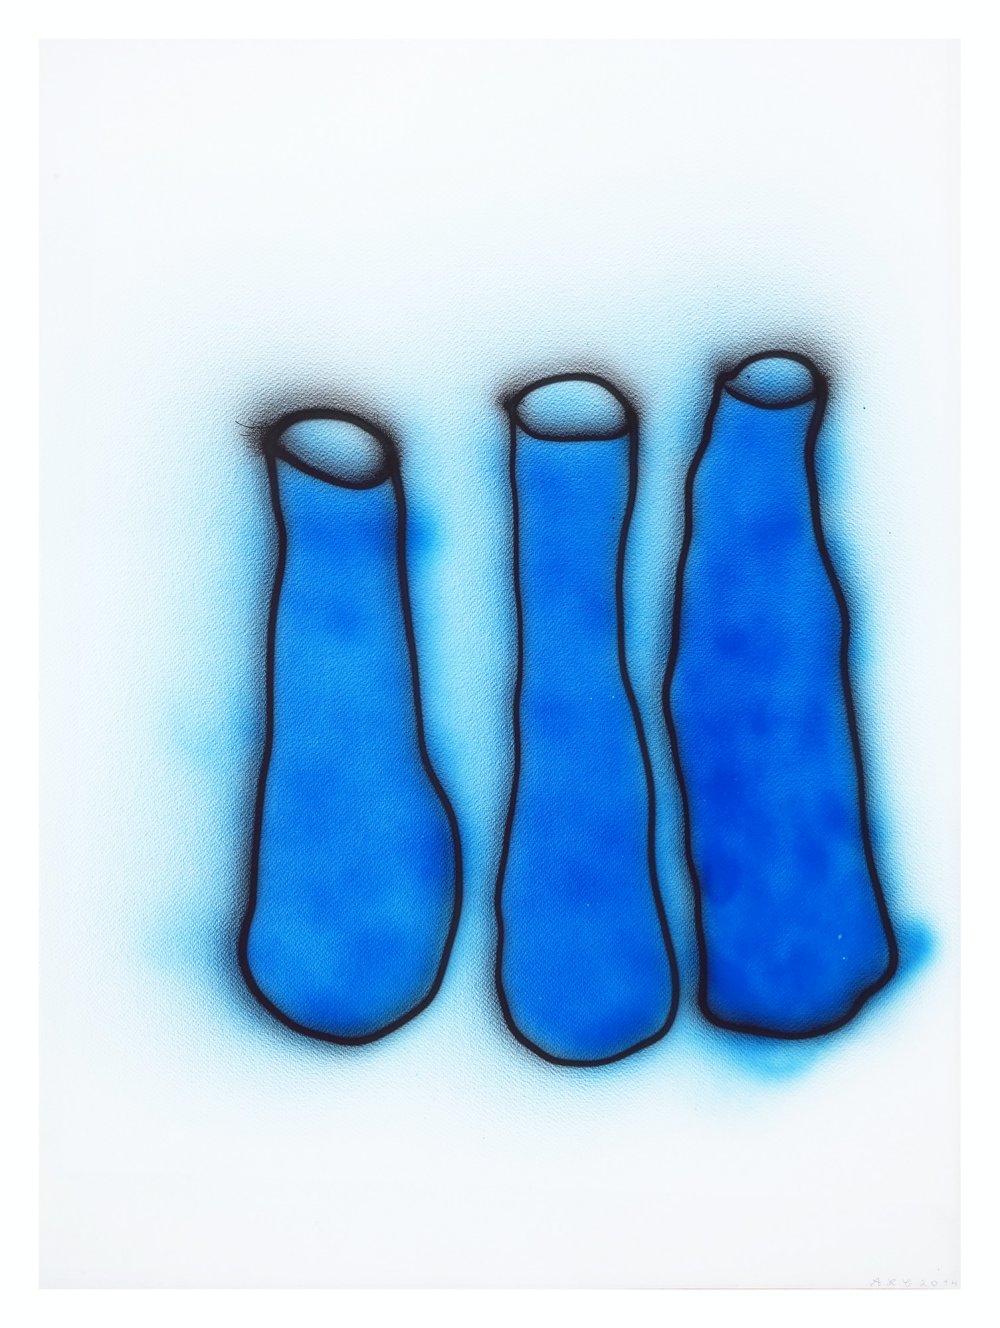 Morandi (Three Blue Bottles III)